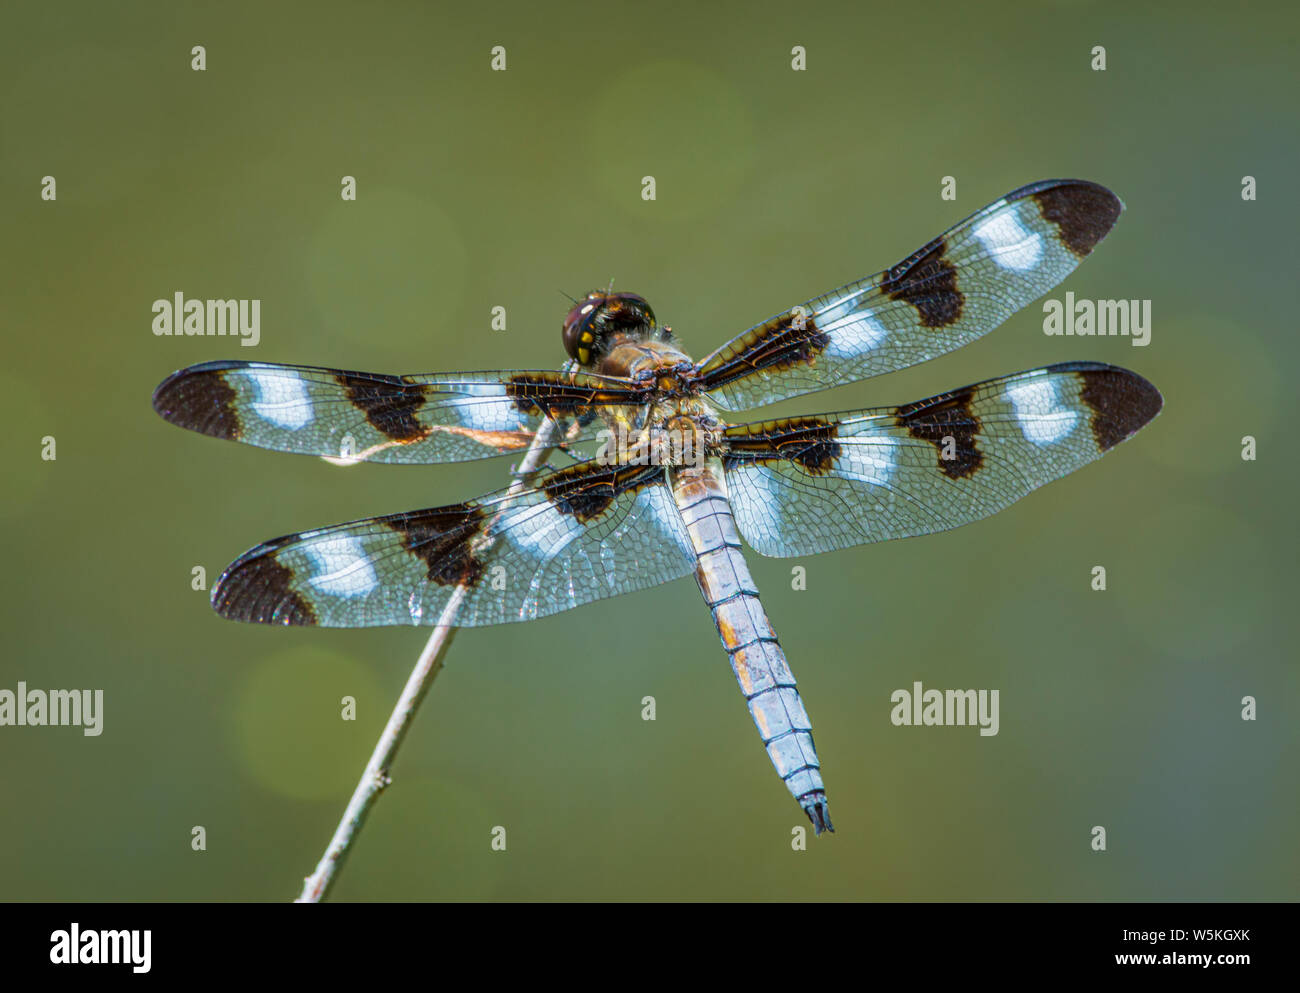 Libellule (Libellula pulchella), une lésine à douze pois, reposant sur la tige de saule dans un étang de marais, Castle Rock Colorado USA. Photo prise en juillet. Banque D'Images